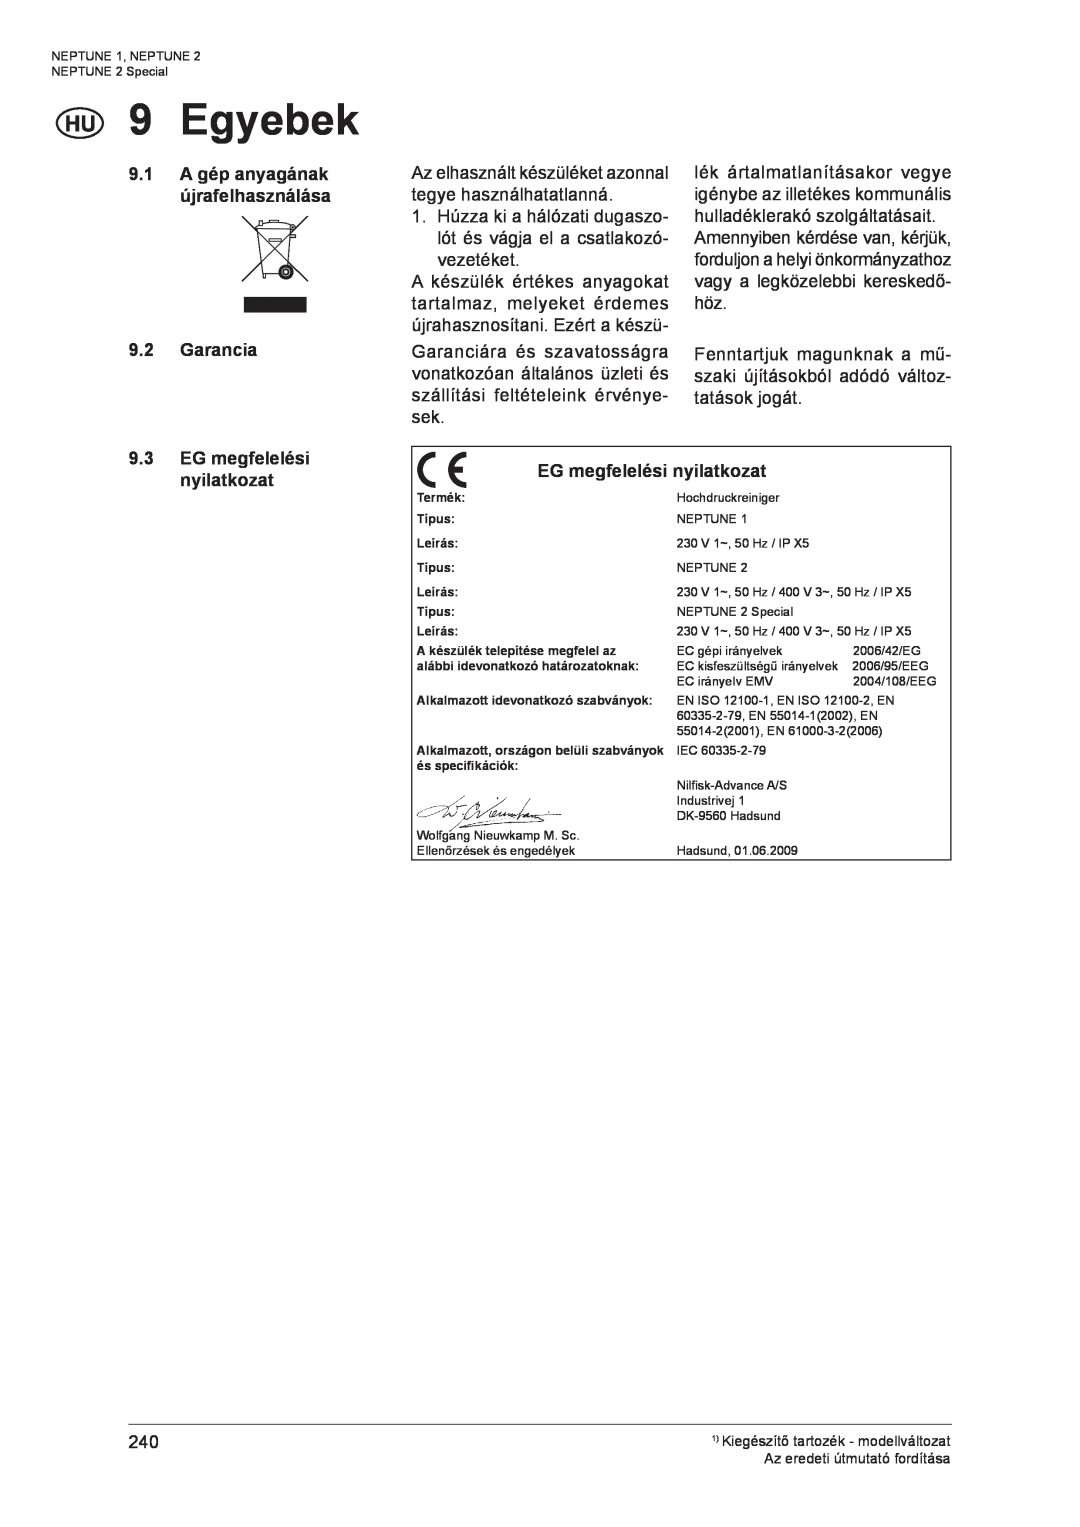 Nilfisk-ALTO NEPTUNE 1 manual Egyebek, A gép anyagának, Garancia, EG megfelelési nyilatkozat 